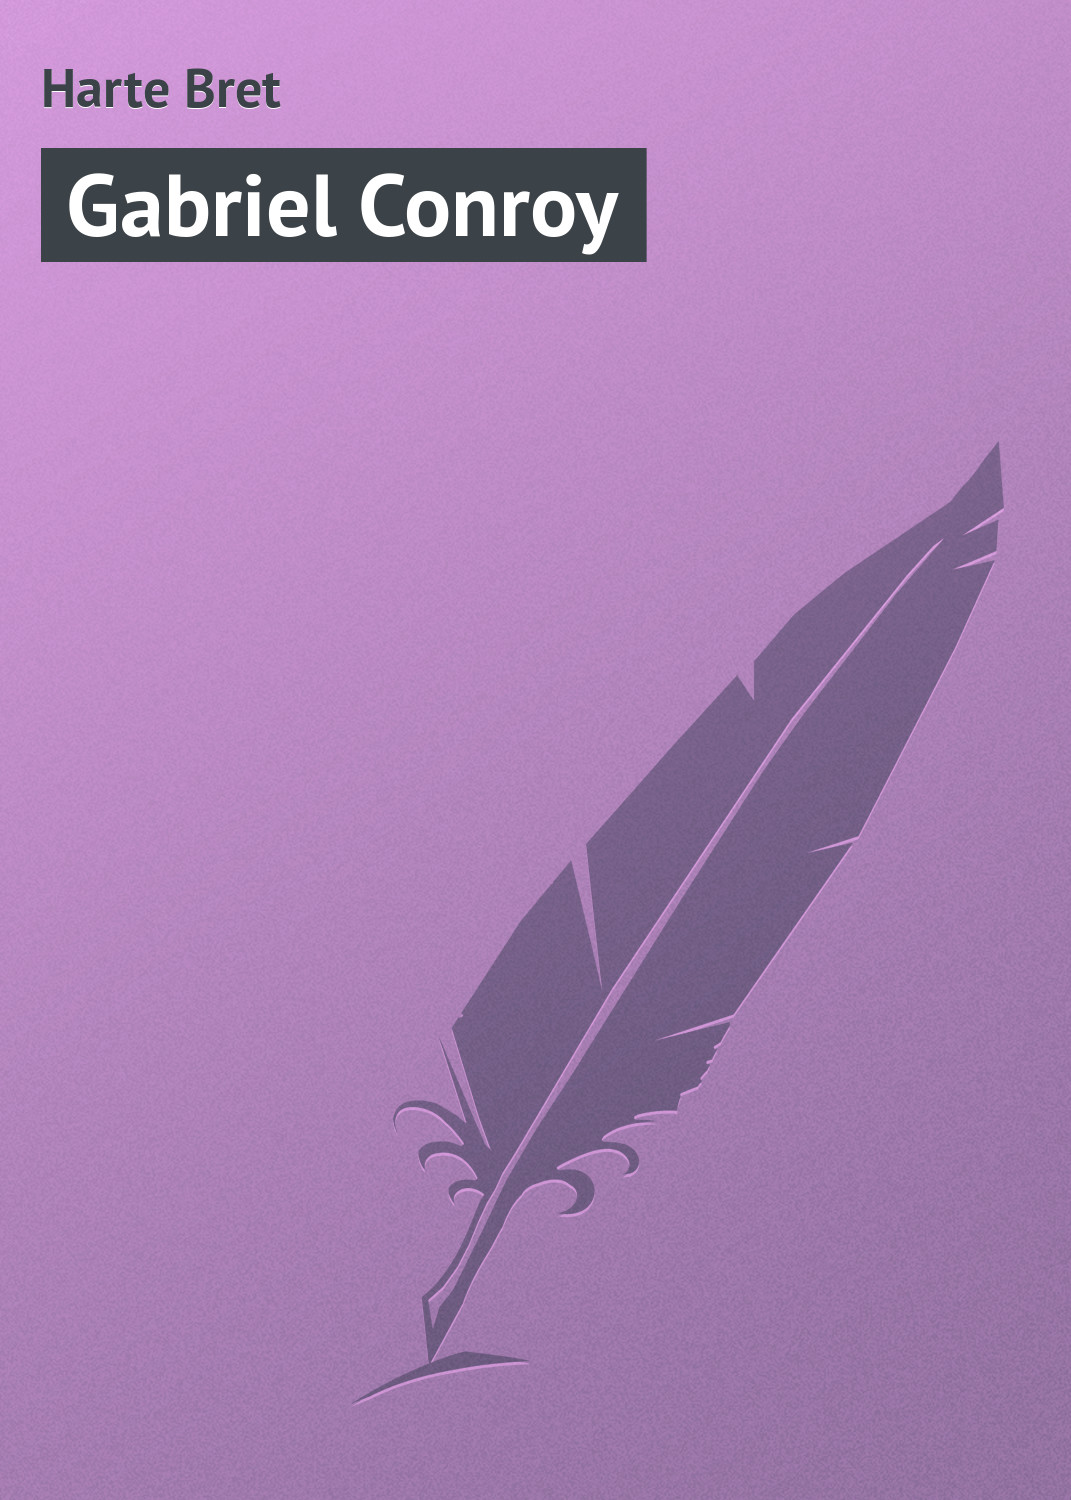 Книга Gabriel Conroy из серии , созданная Bret Harte, может относится к жанру Зарубежная классика, Зарубежные приключения. Стоимость электронной книги Gabriel Conroy с идентификатором 23160283 составляет 5.99 руб.